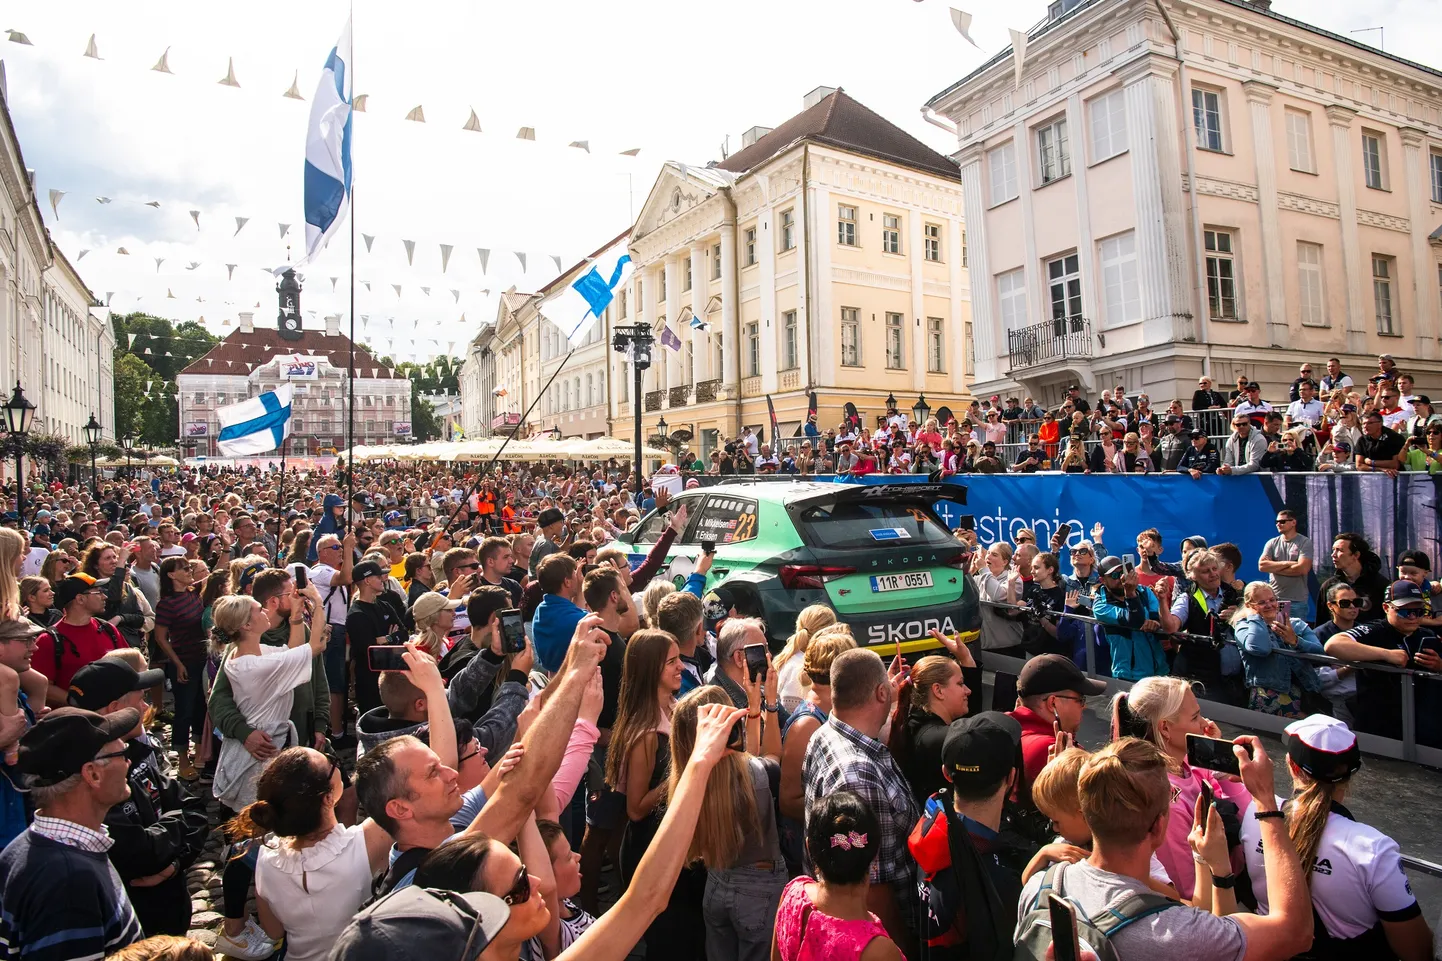 Rally Estonia avamine ja auhinnatseremoonia toimub ikka Tartus, kuid seekord on lava Kaarsilla juurest edasi liikunud Raekoja platsi suunas.